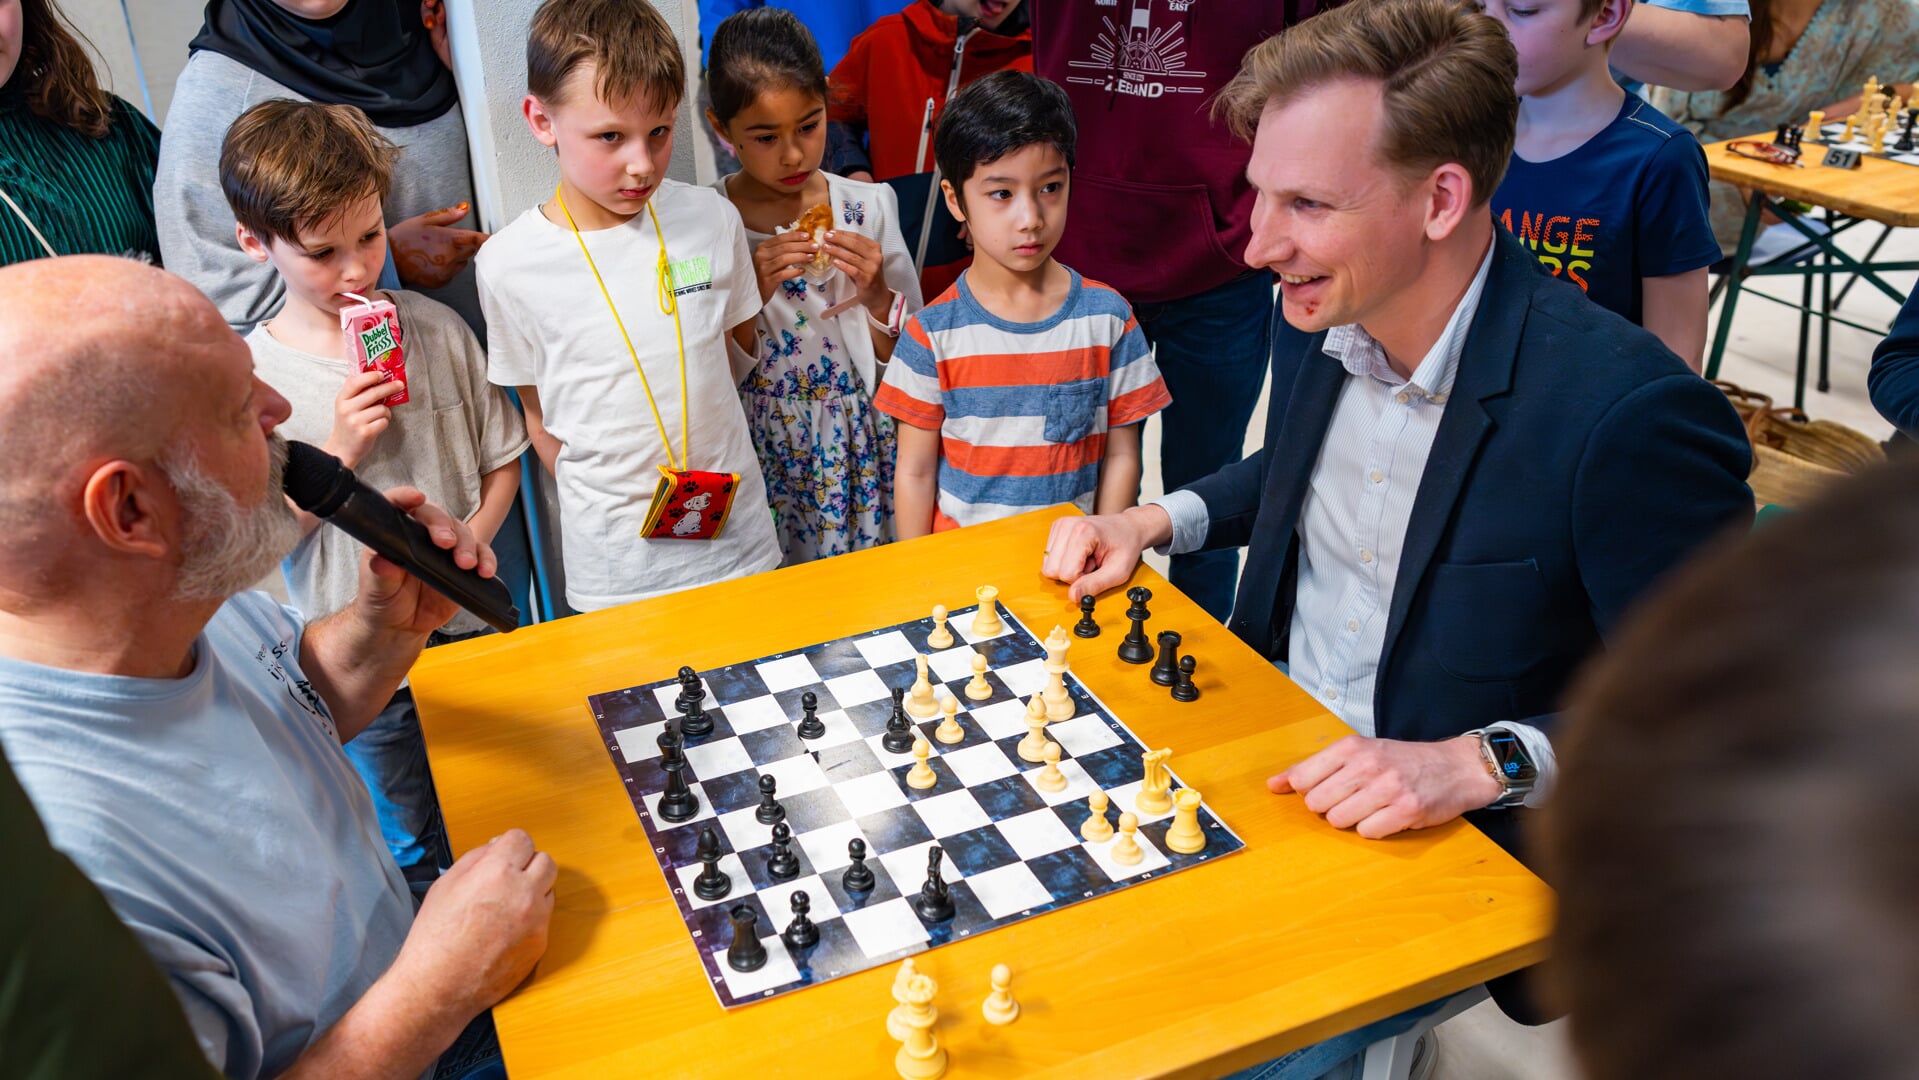 Voorzitter Eric de Lange (l) opent samen met wethouder Postma (r) het Jeugdschaaktoernooi. 